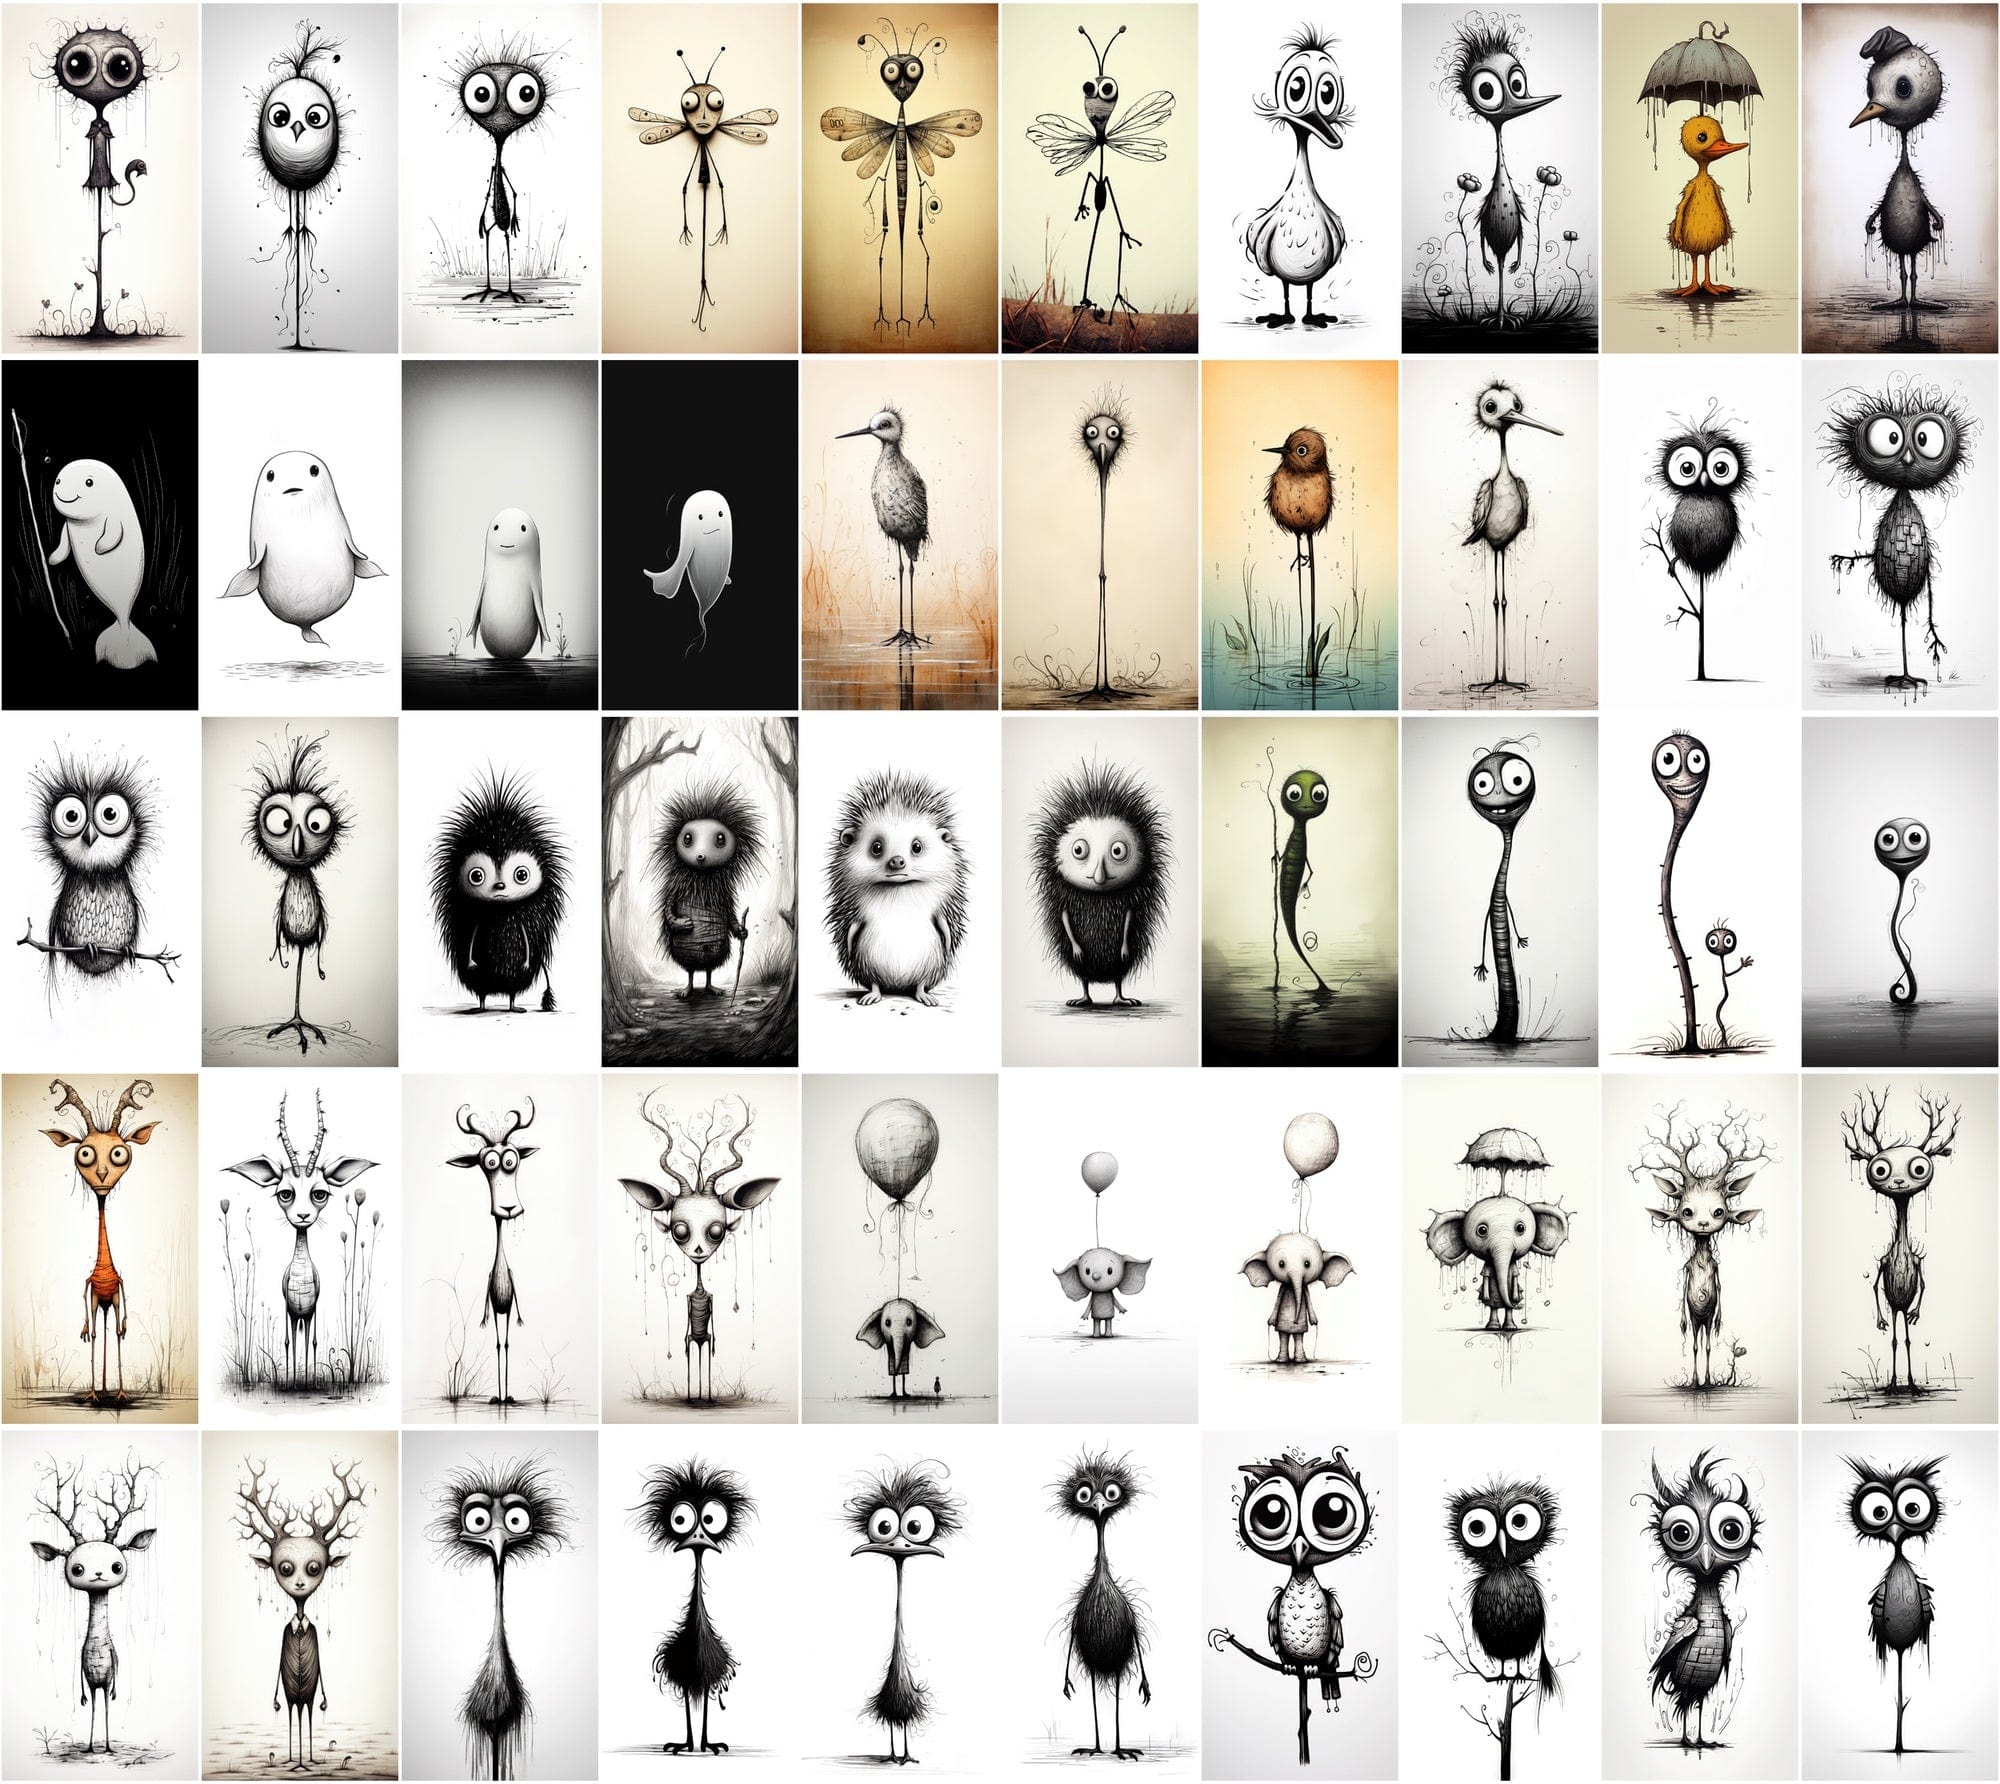 Emotive Surreal Animal Portraits: Monochrome PNG Bundle (770 Images) - Unique & Captivating Digital Download Sumobundle